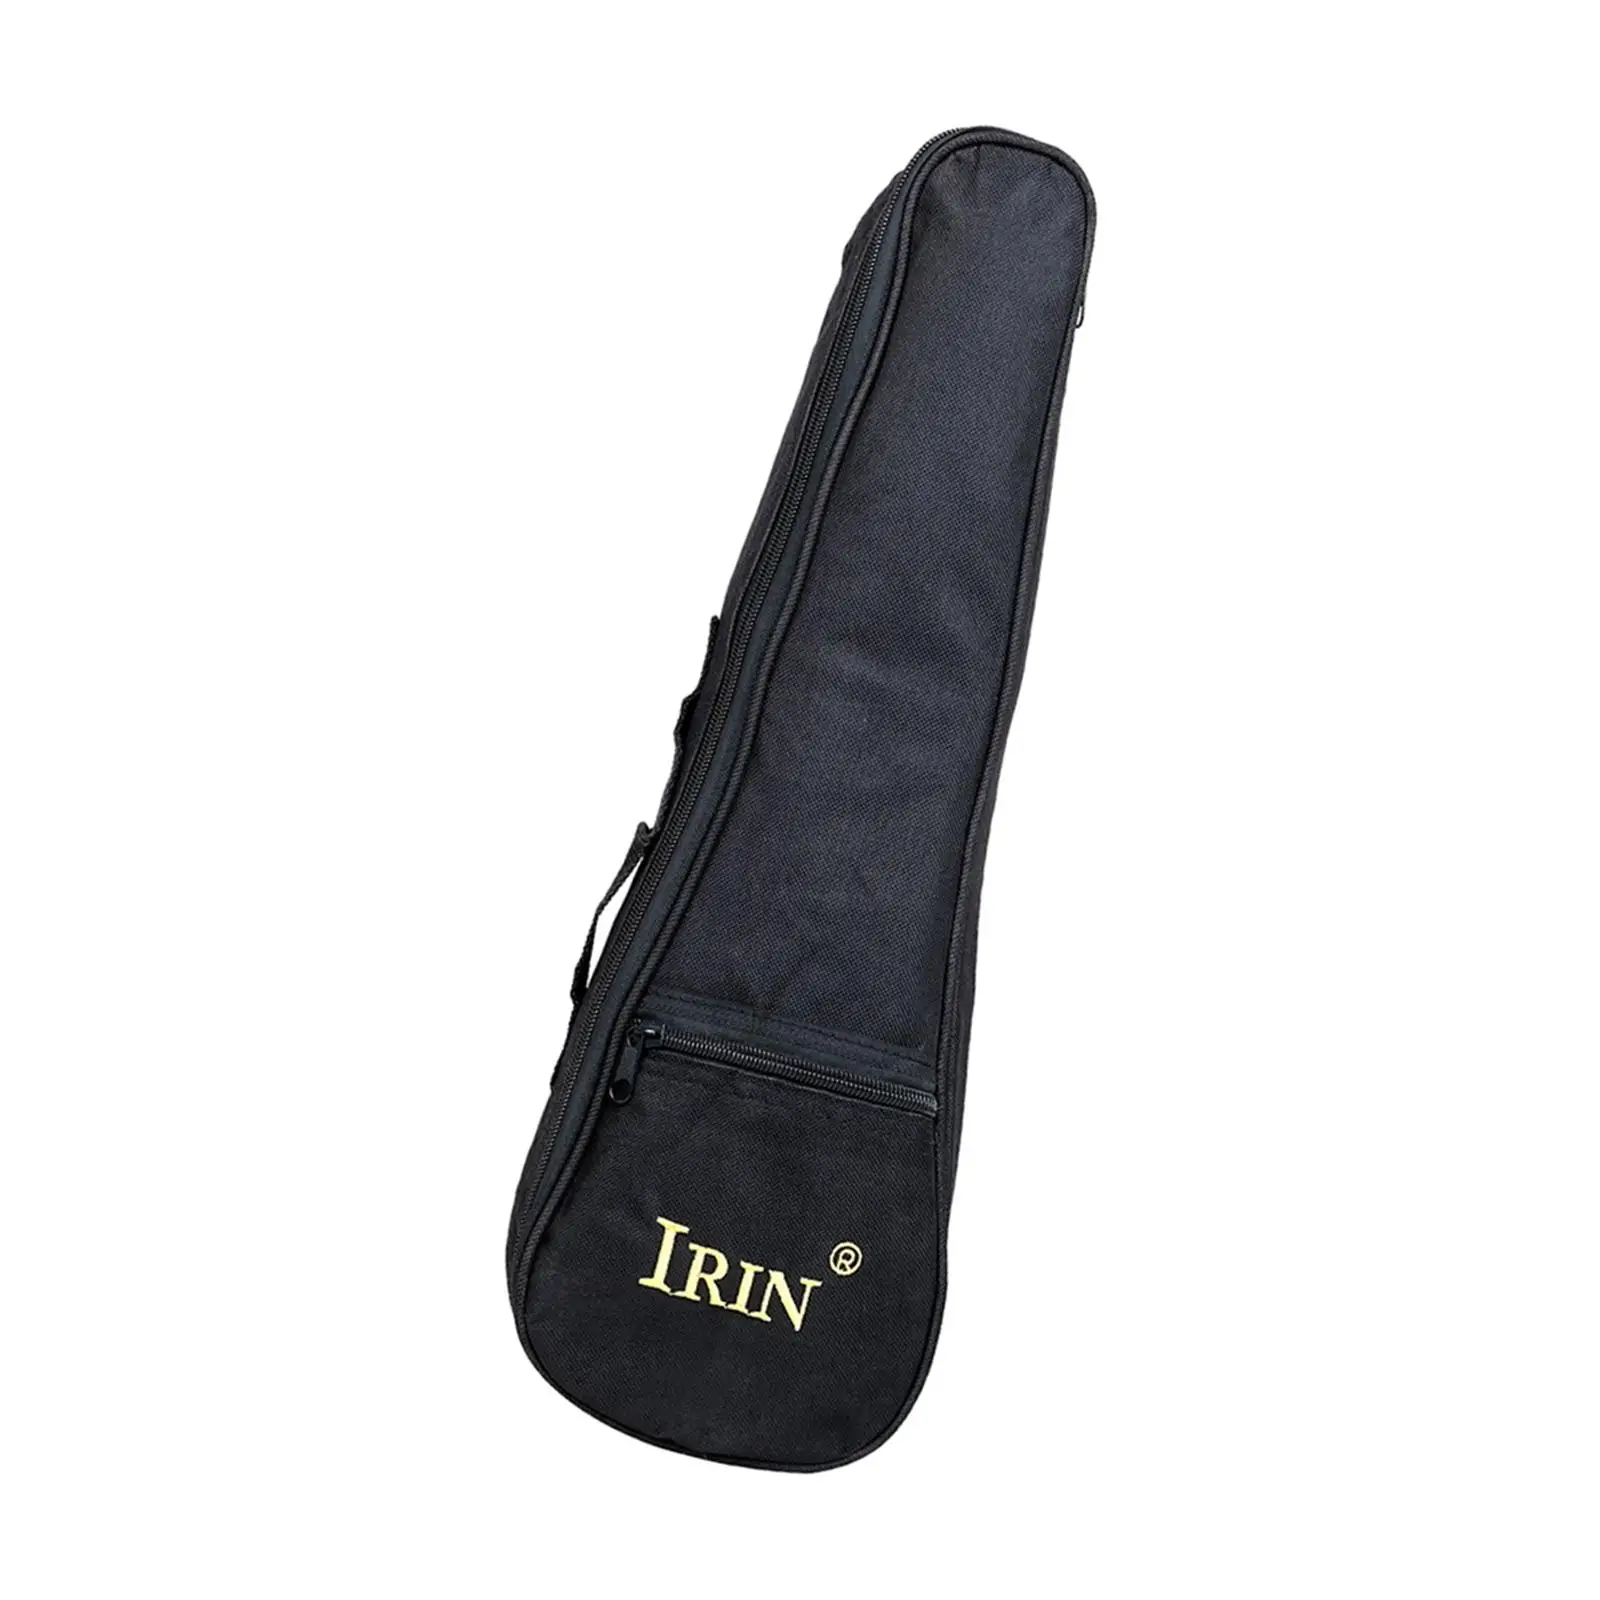 Oxford Cloth Ukulele Gig Bag W/Carrying Handle Pocket Waterproof Uke Backpack Storage Soft Case for Travel Tour Concert